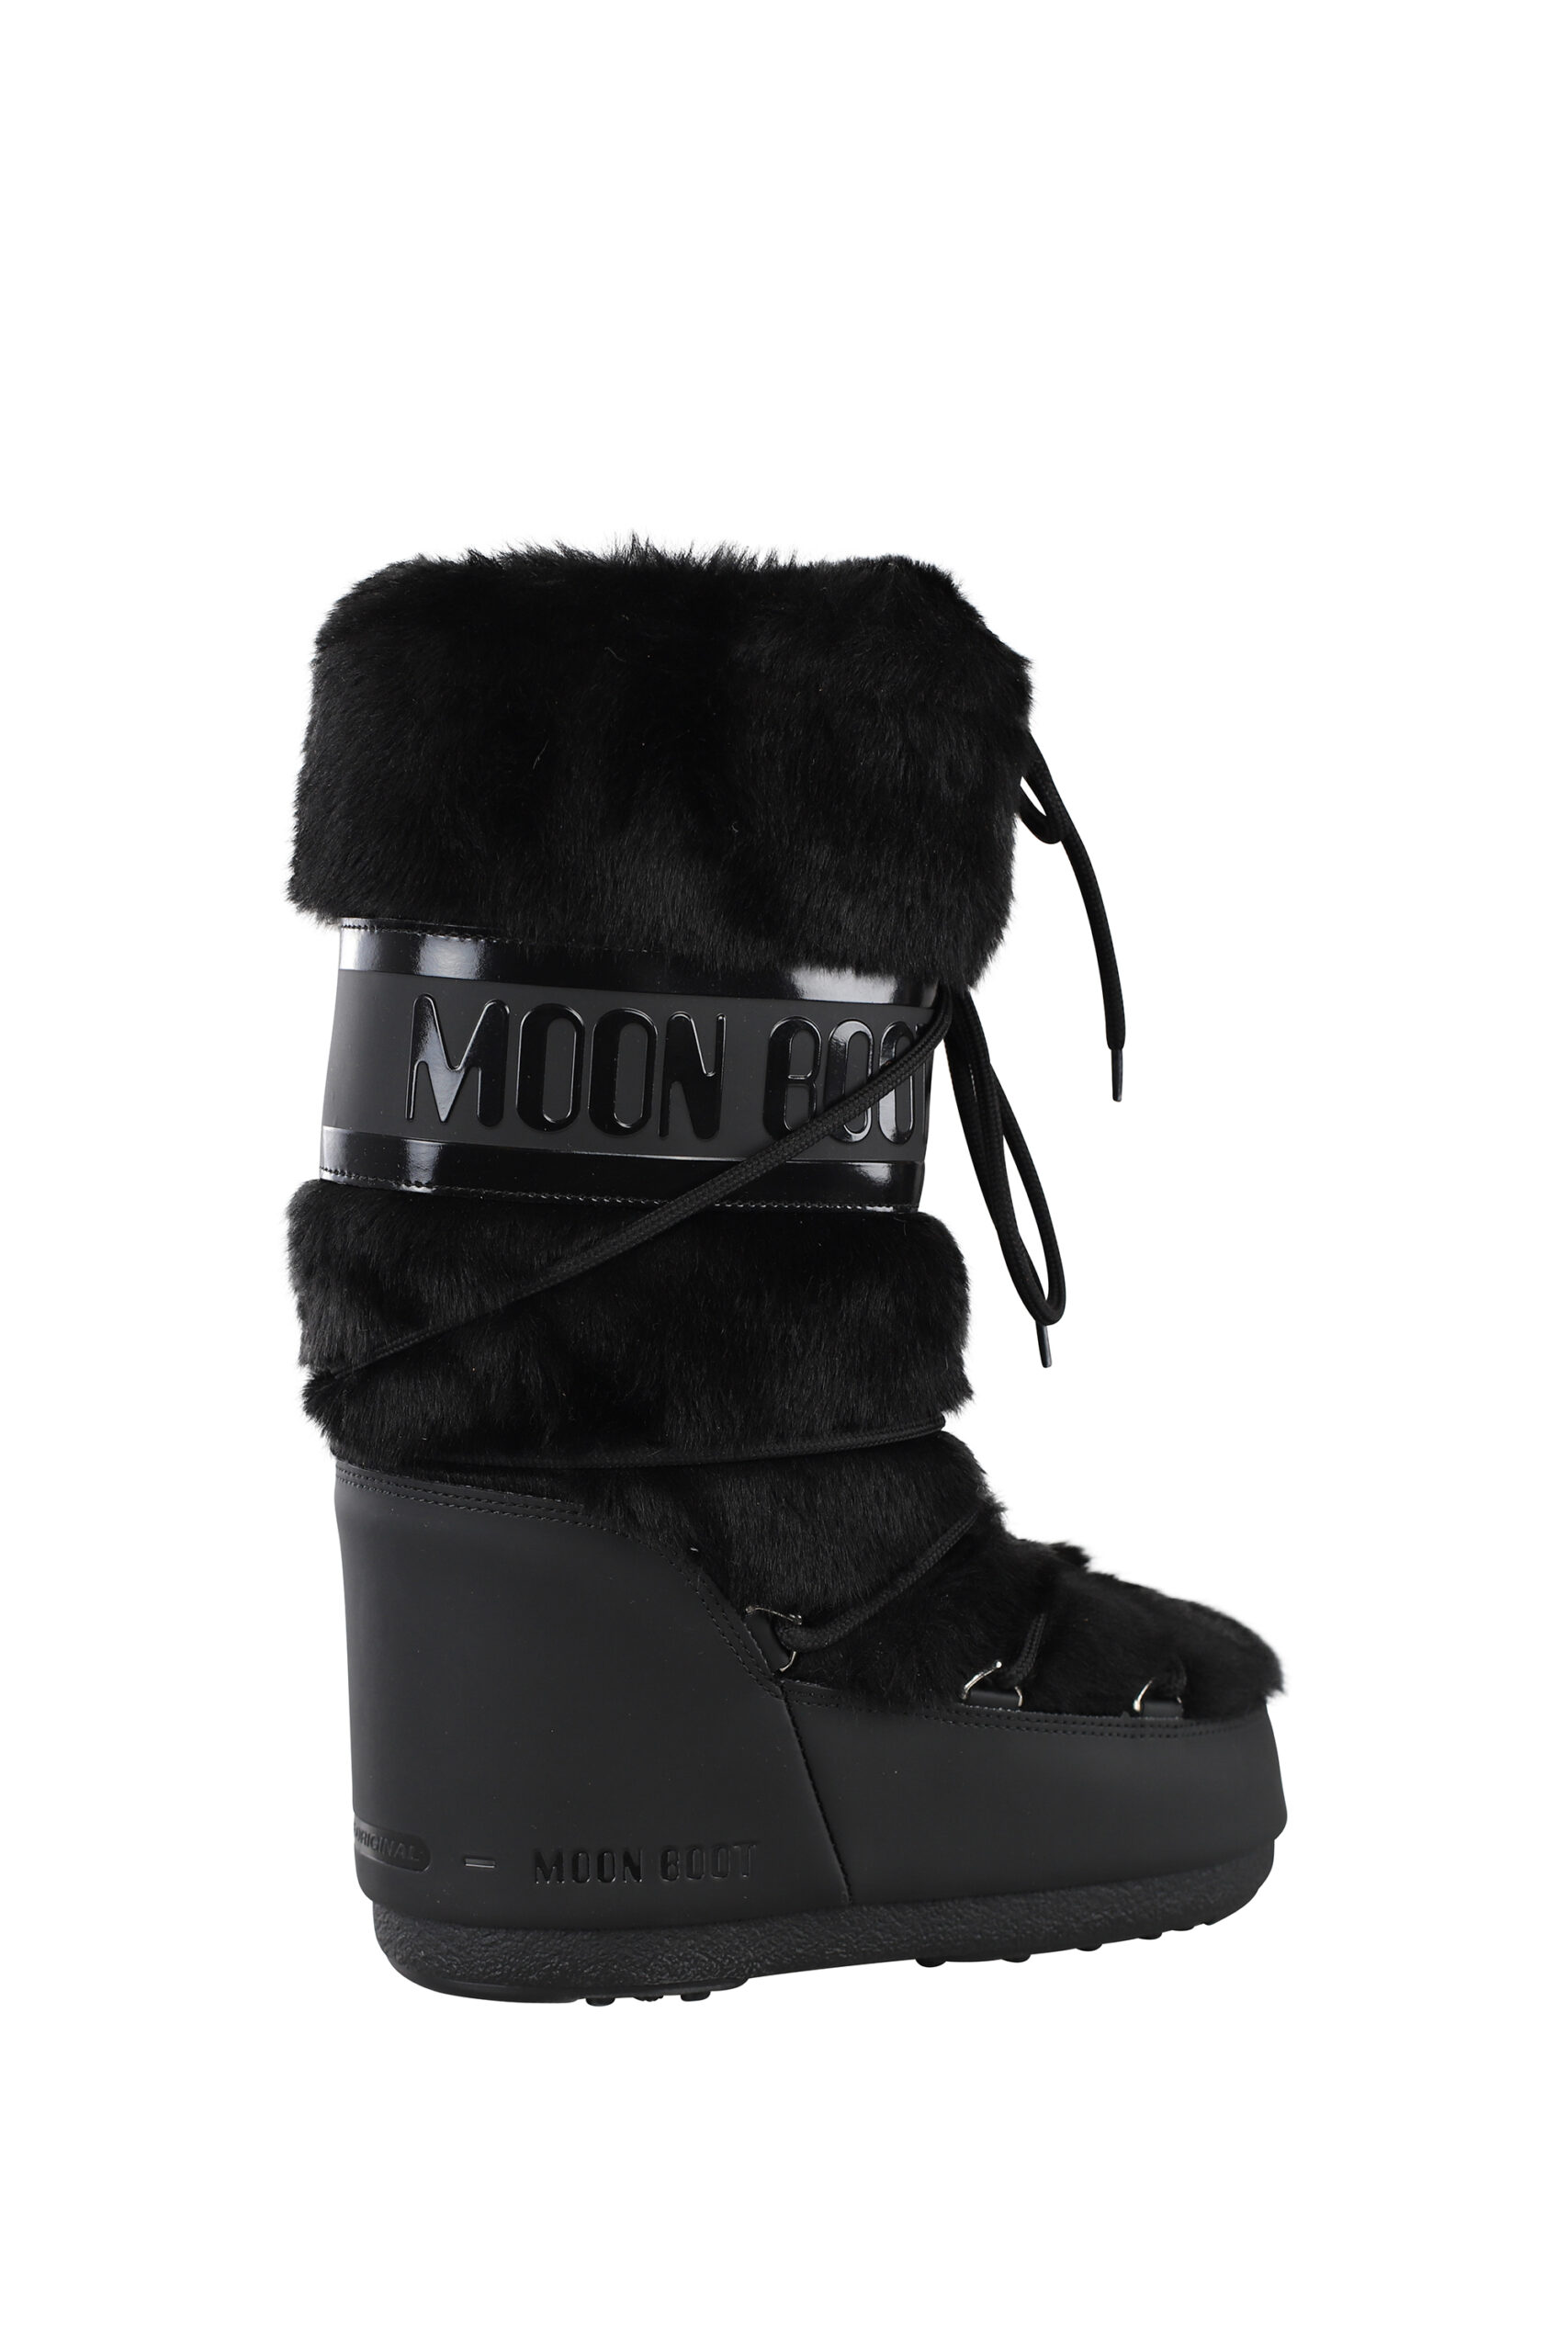 Moon Boot - Botas negras de nieve con logo monocromático - BLS Fashion